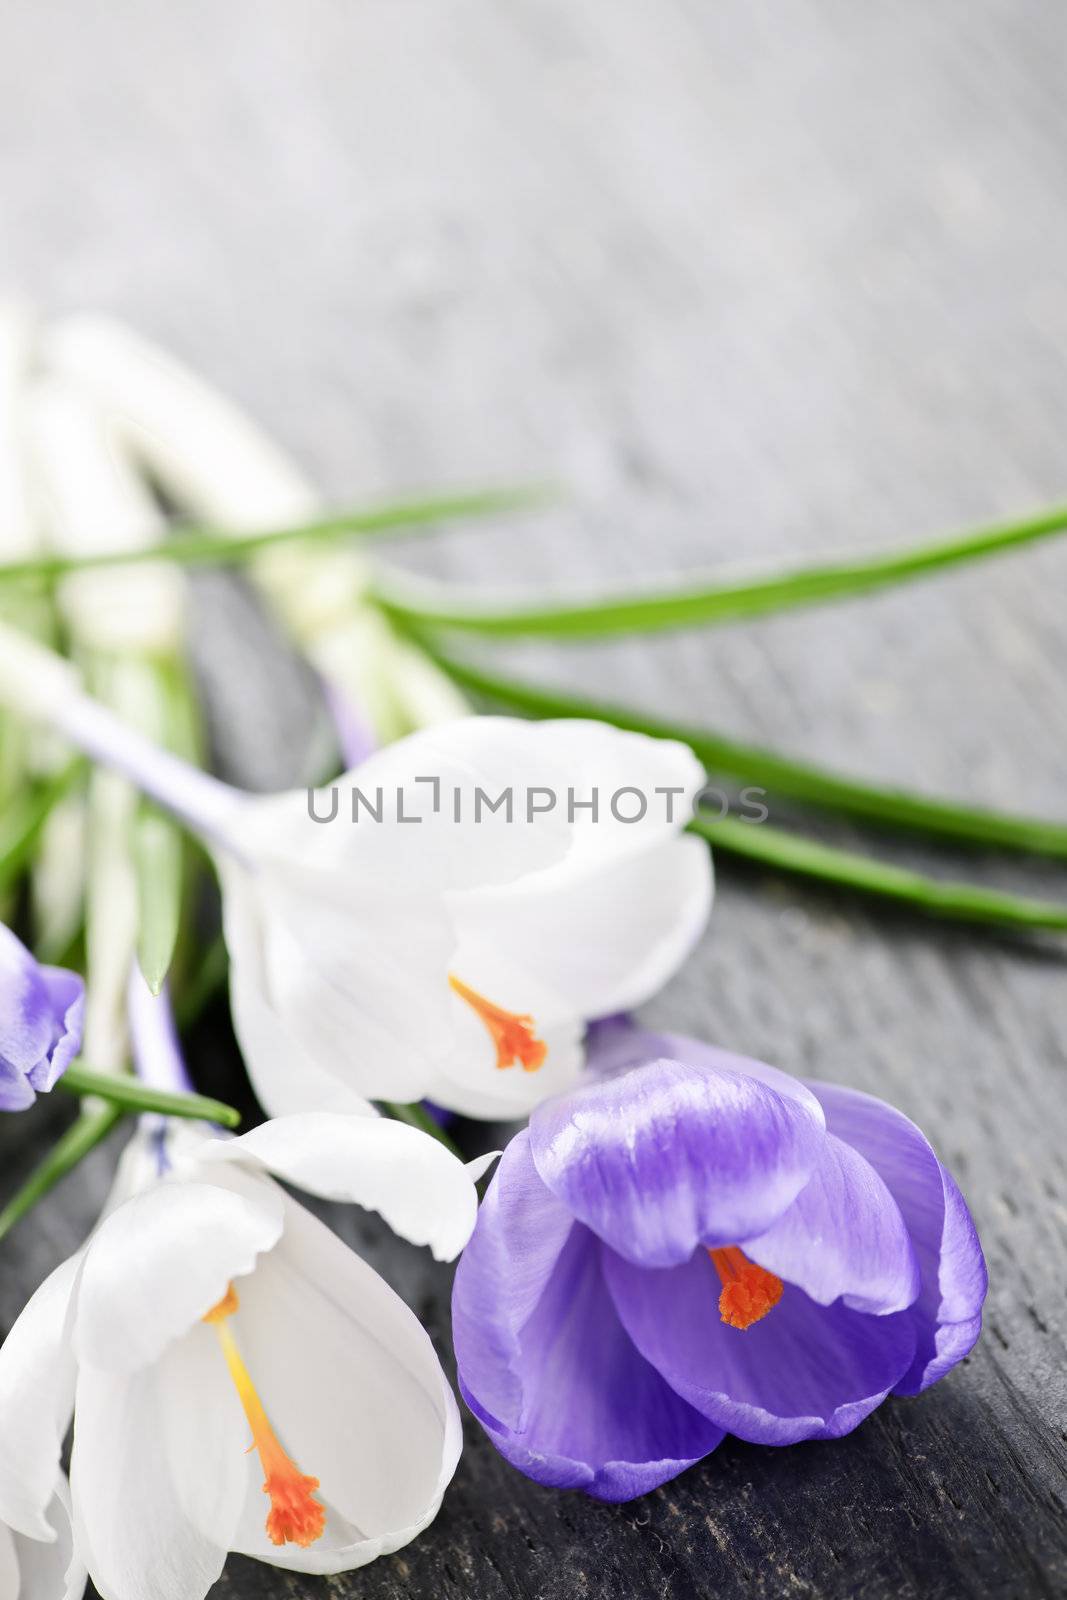 Spring crocus flowers by elenathewise